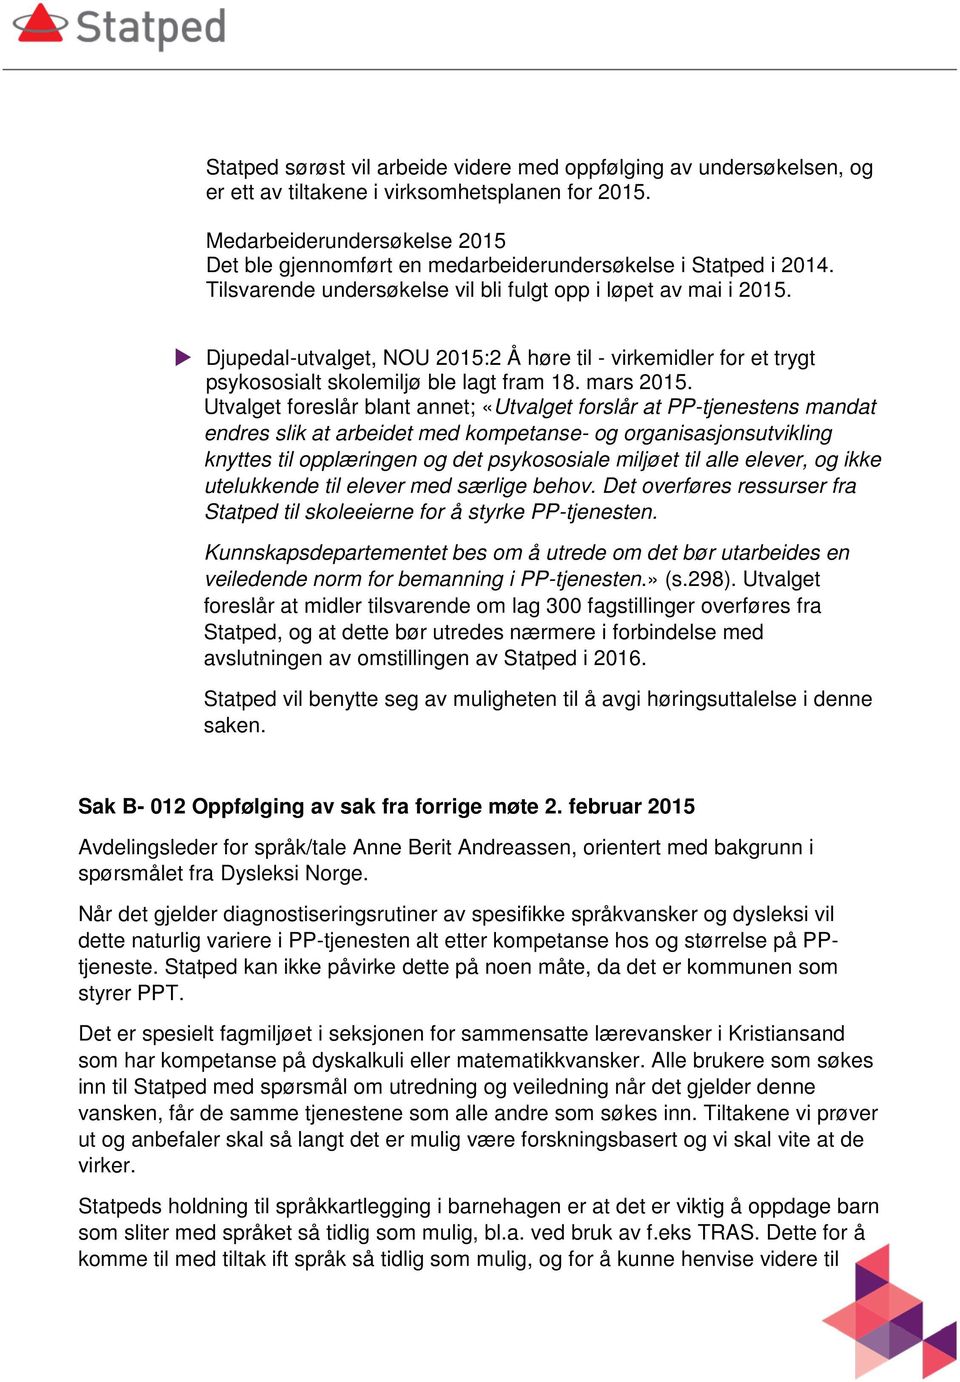 Djupedal-utvalget, NOU 2015:2 Å høre til - virkemidler for et trygt psykososialt skolemiljø ble lagt fram 18. mars 2015.